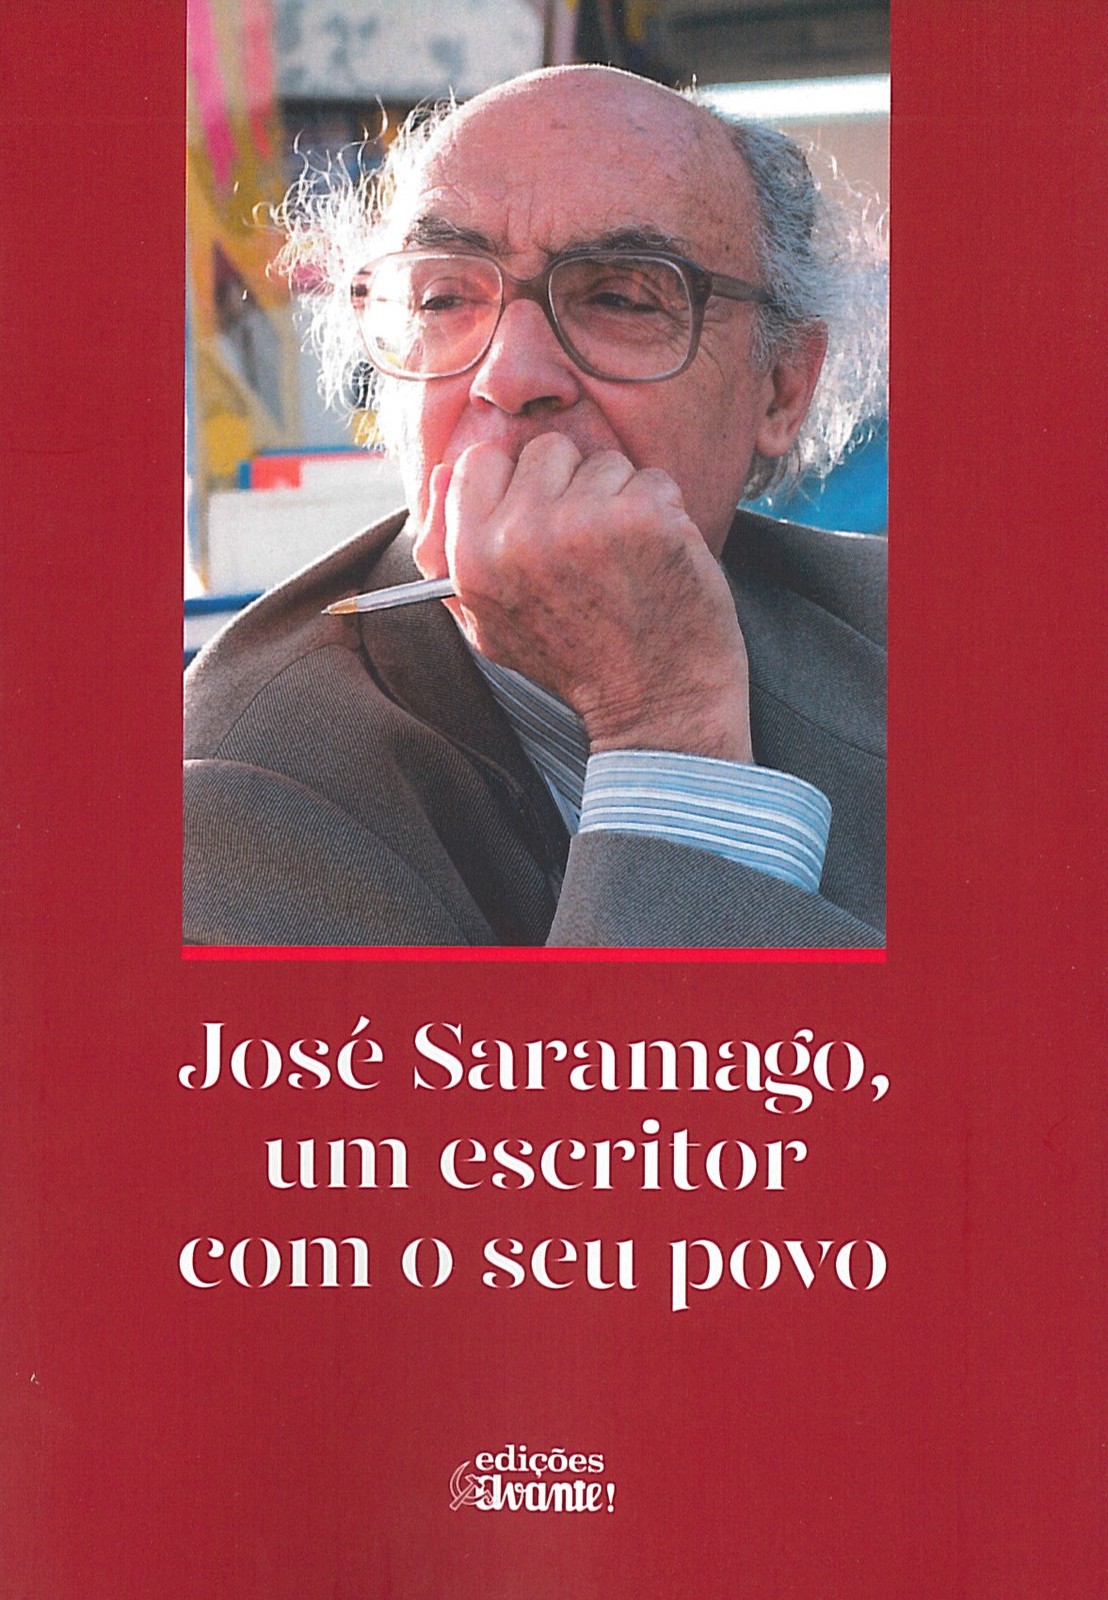 José Saramago, um escritor com o seu povo